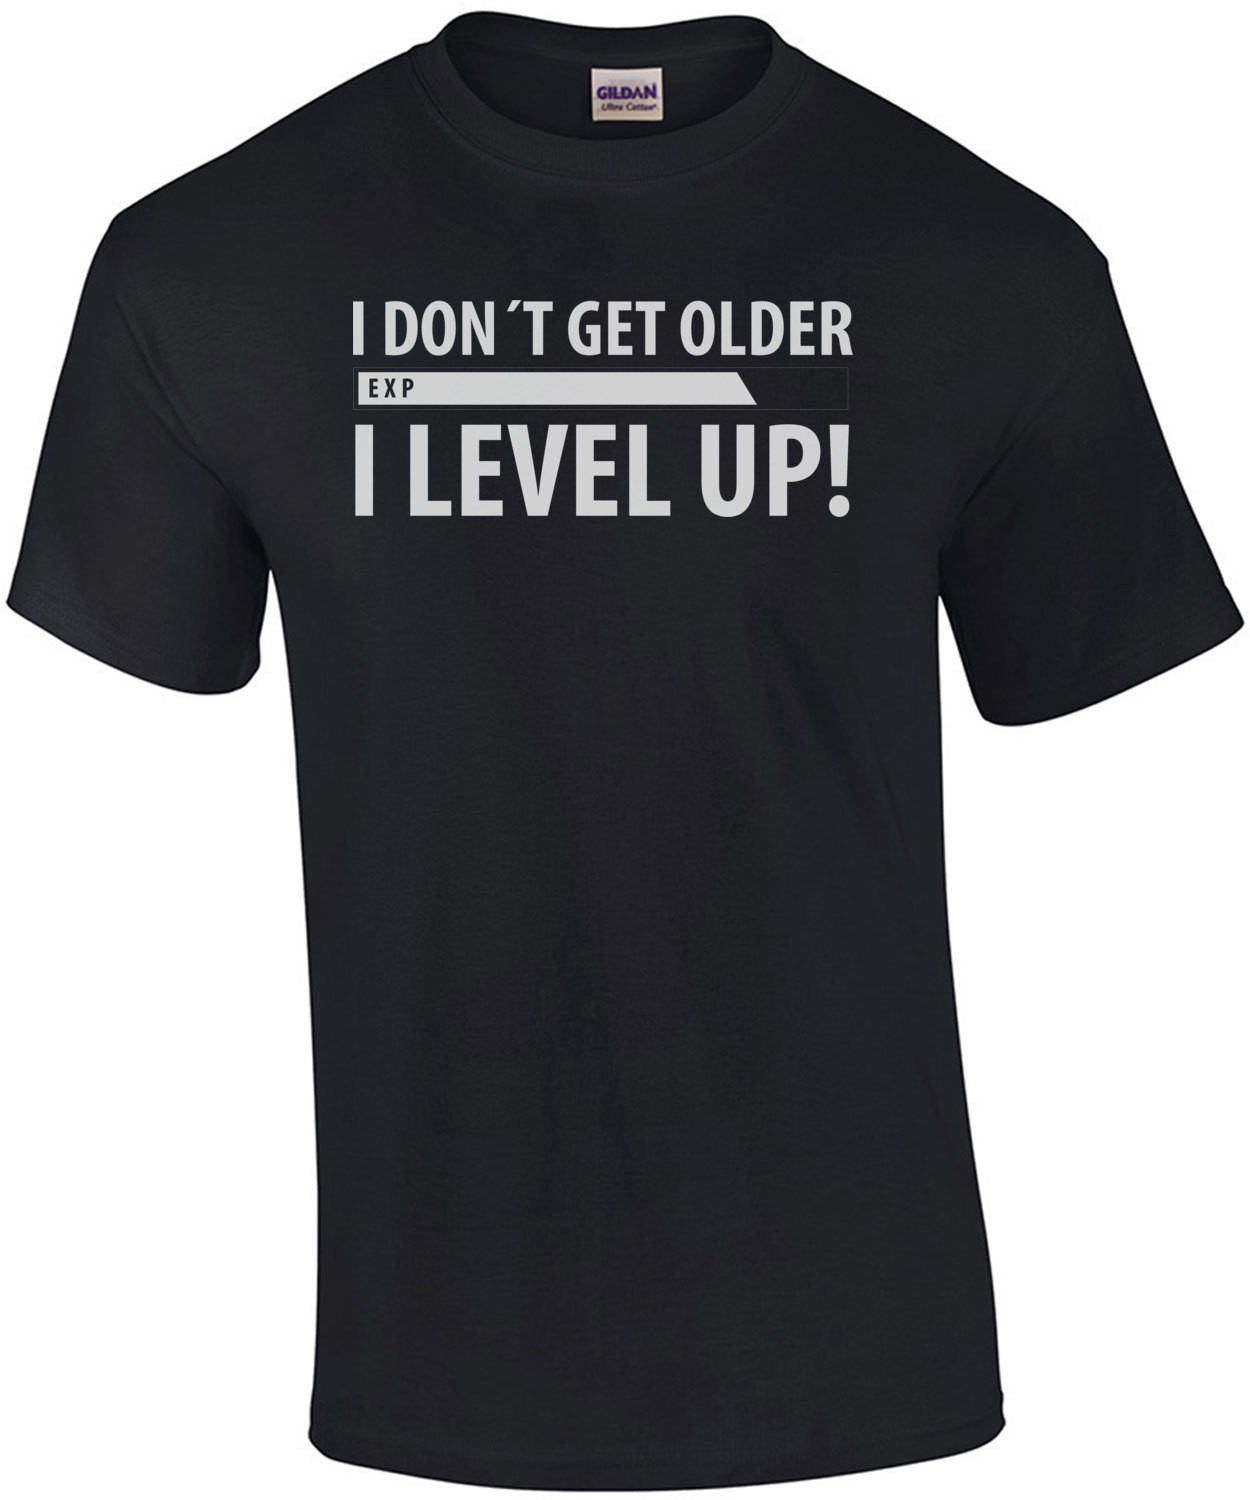 I don't get older - I level up! Funny T-Shirt